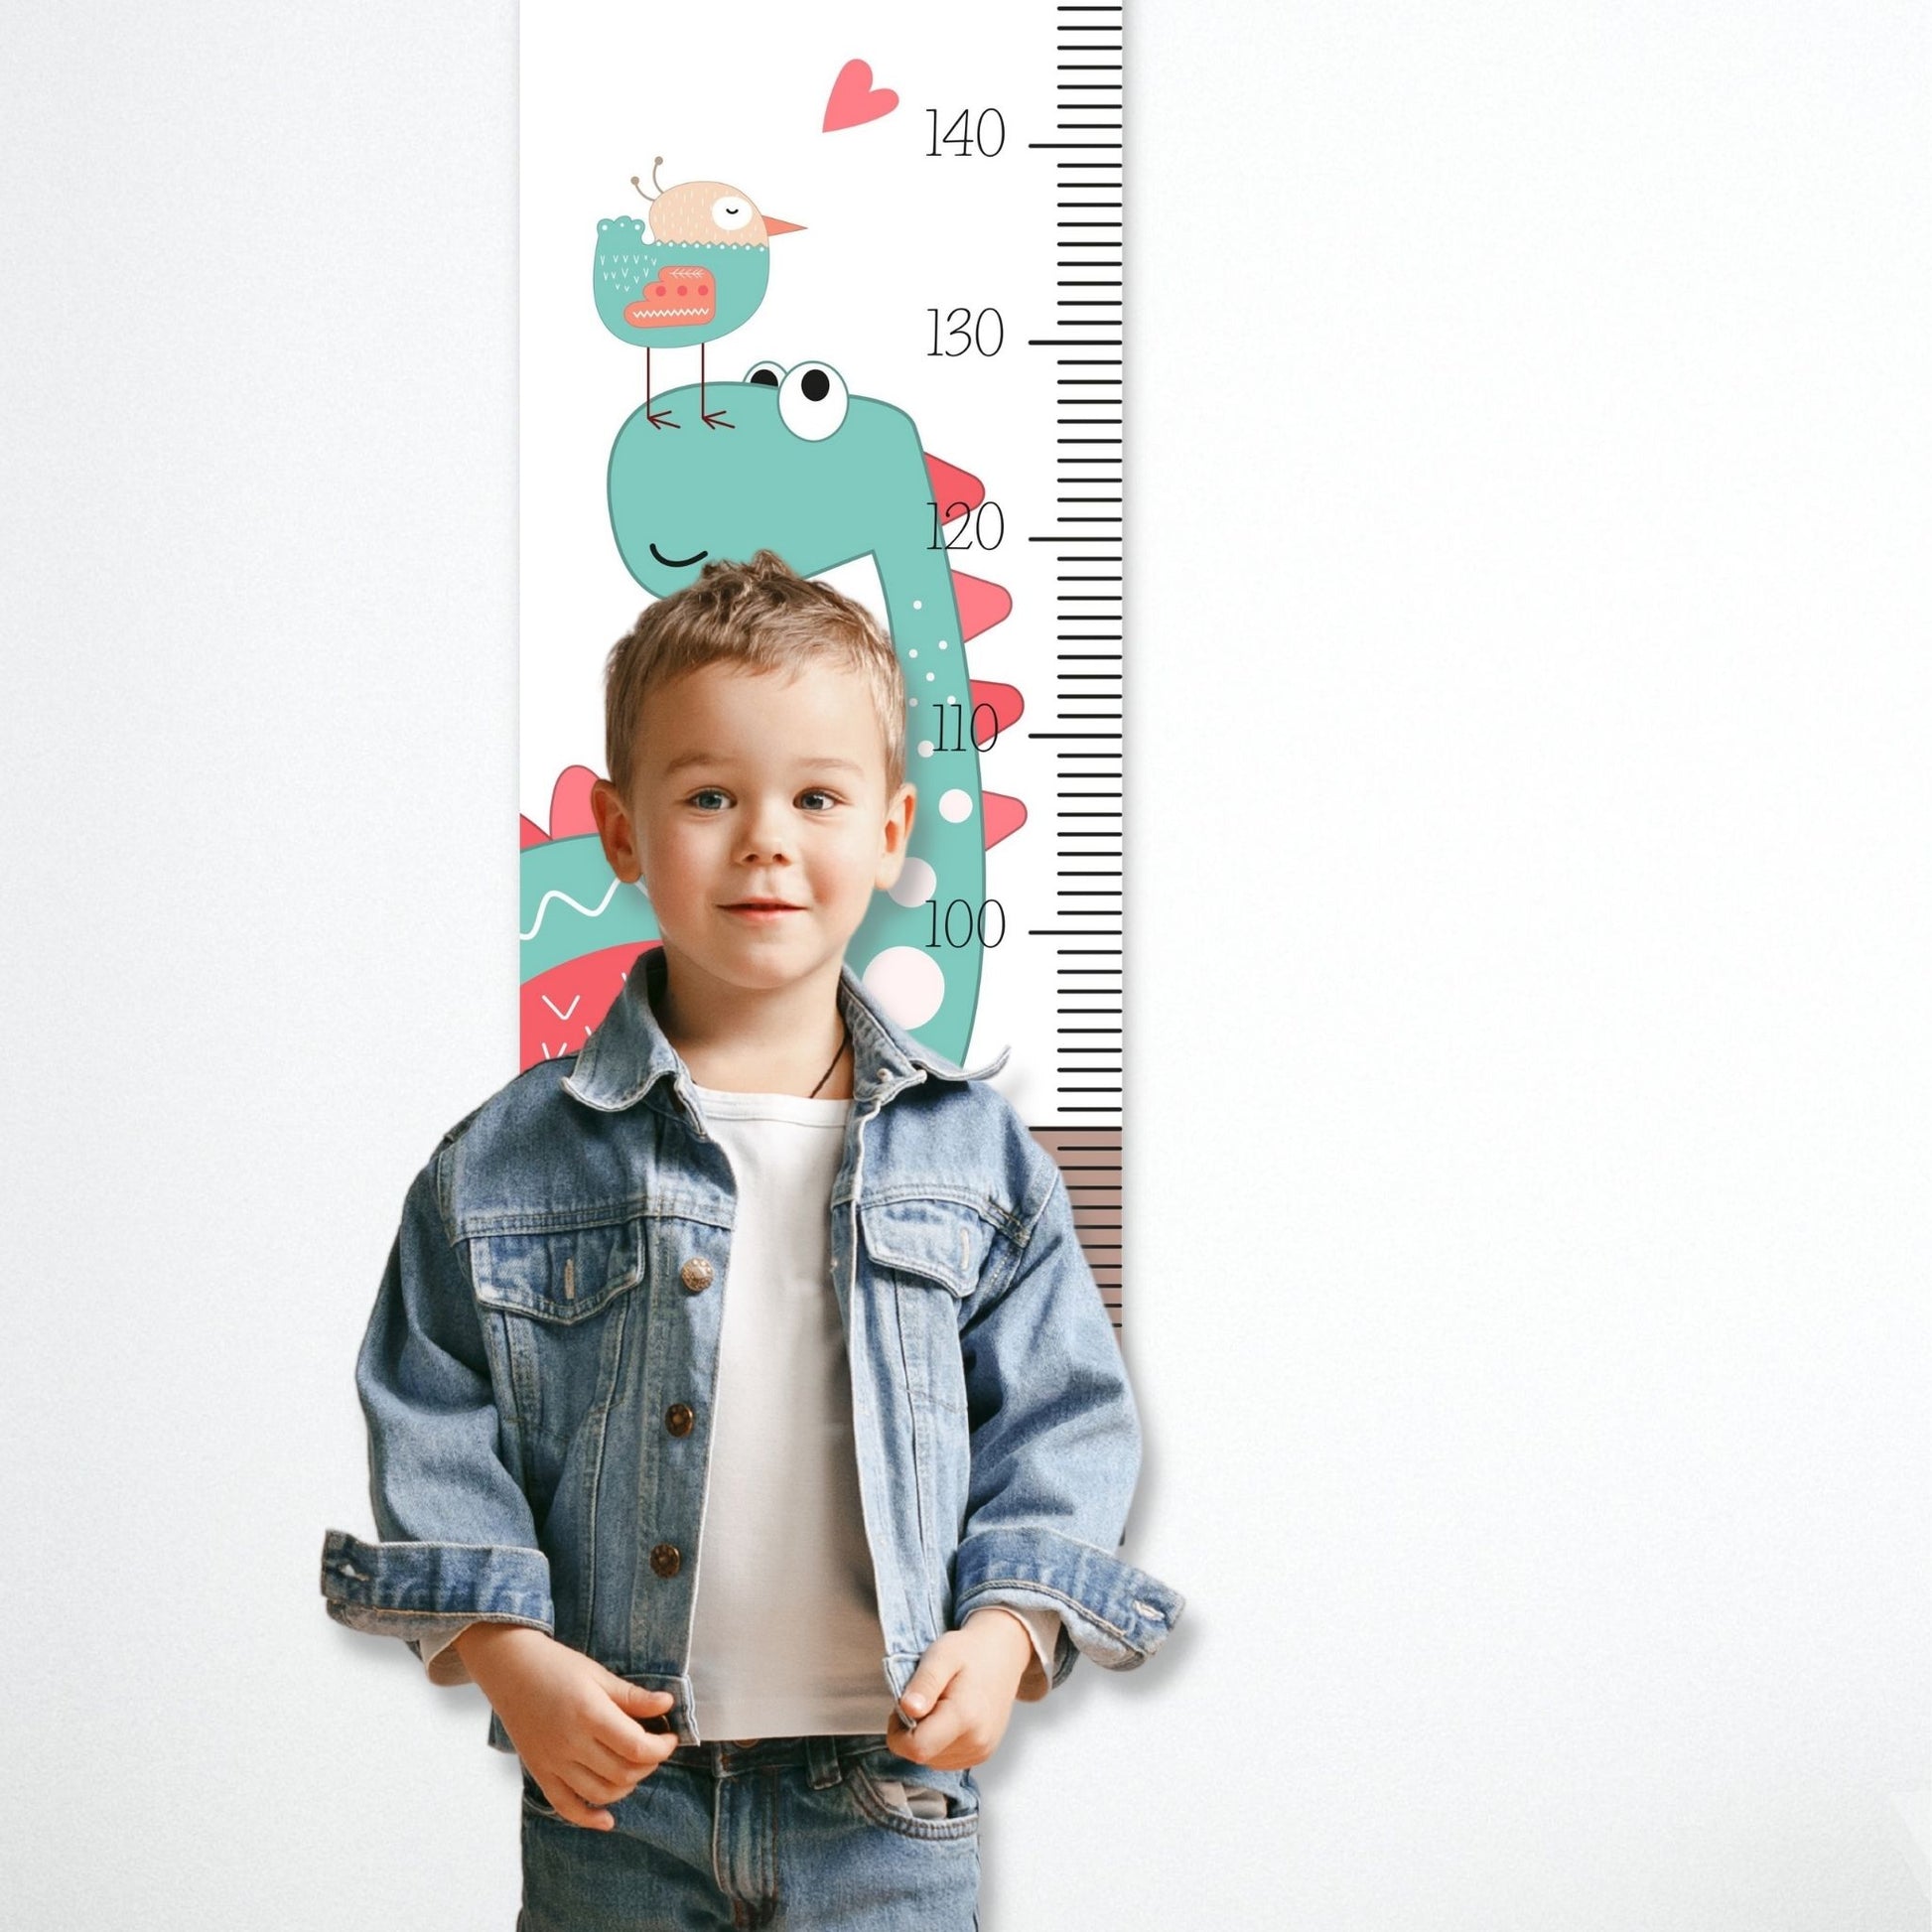 Dekorativ plakat med høydemåler og en mint grønn dinosaur på en hvit bakgrunn. Illustrasjon som viser høydemåler henger på en vegg og en gutt som måler seg.